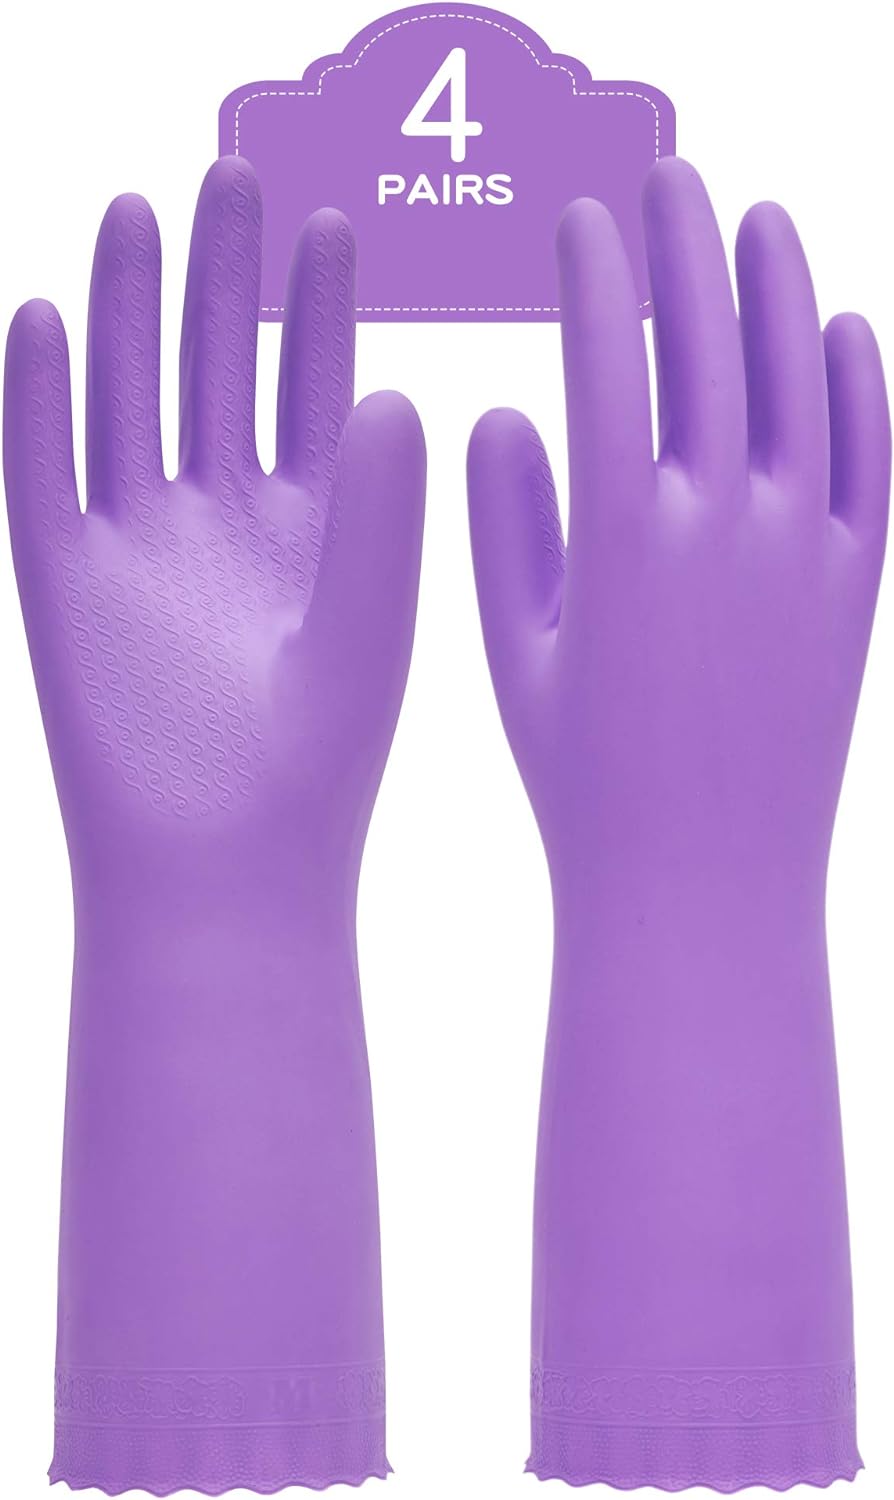 Paquete de 2 y 4 guantes afelpados para el hogar.